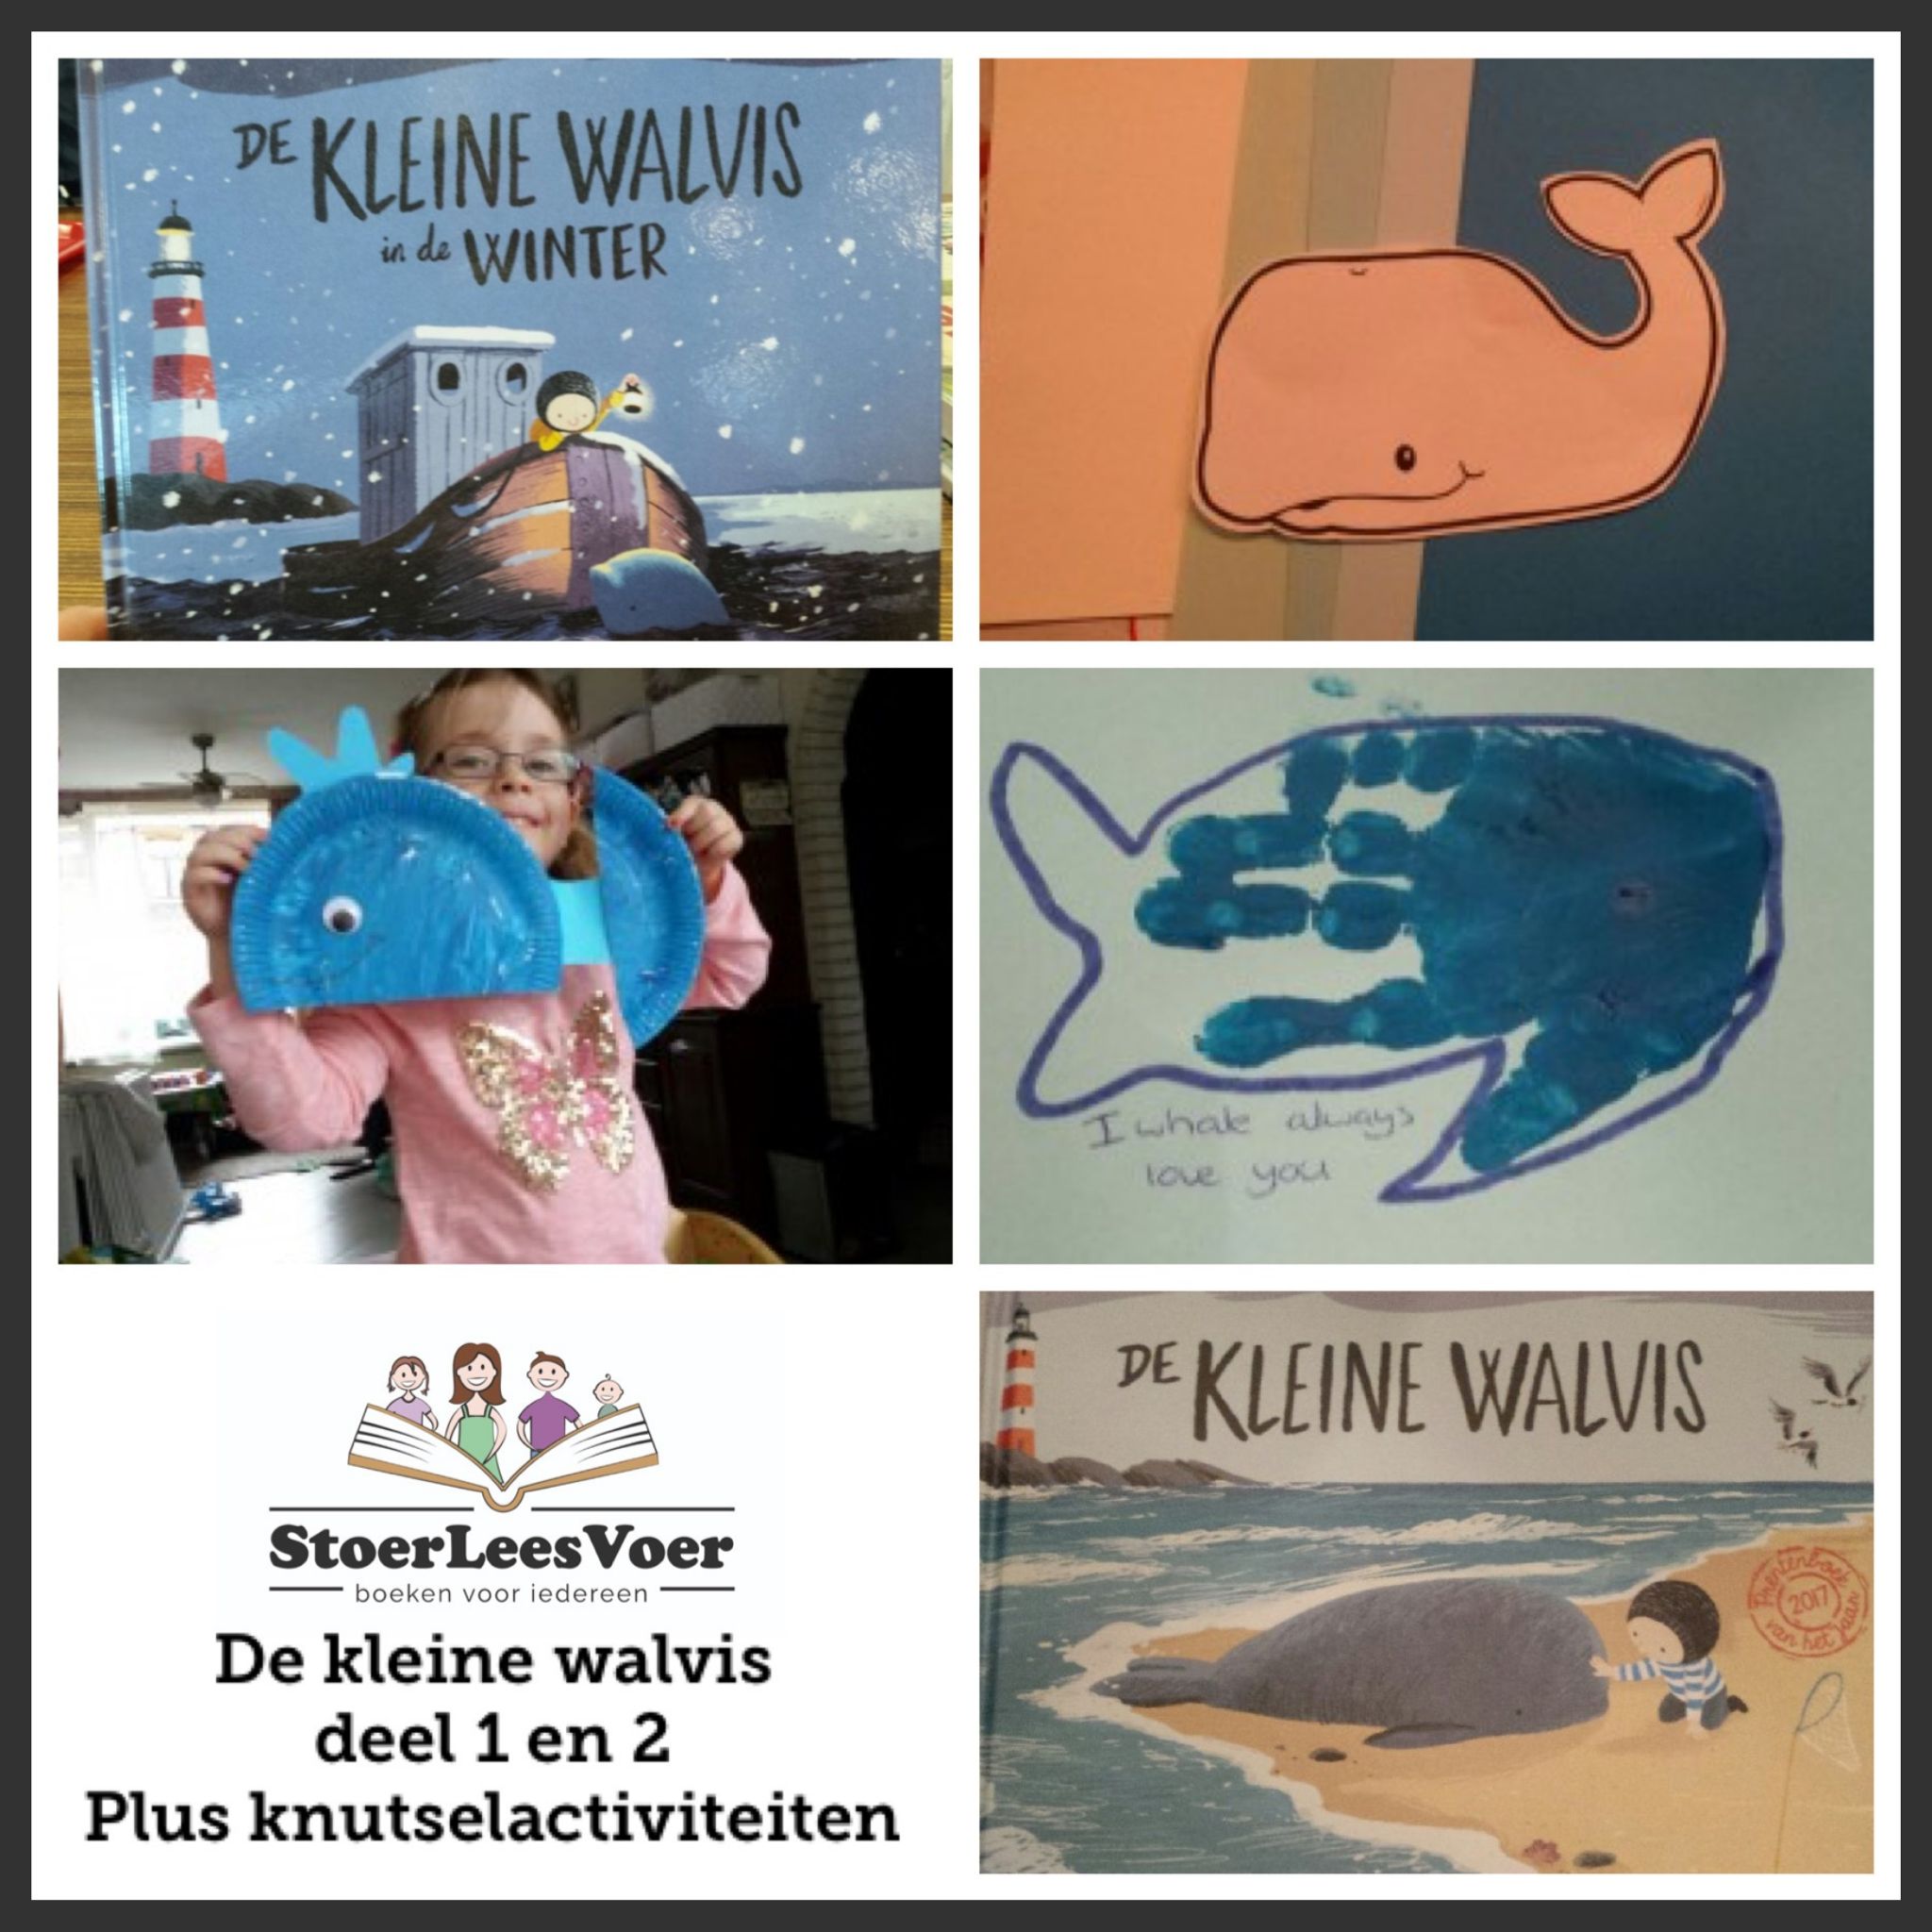 De kleine Walvis prentenboek Nationale voorleesdagen 2017